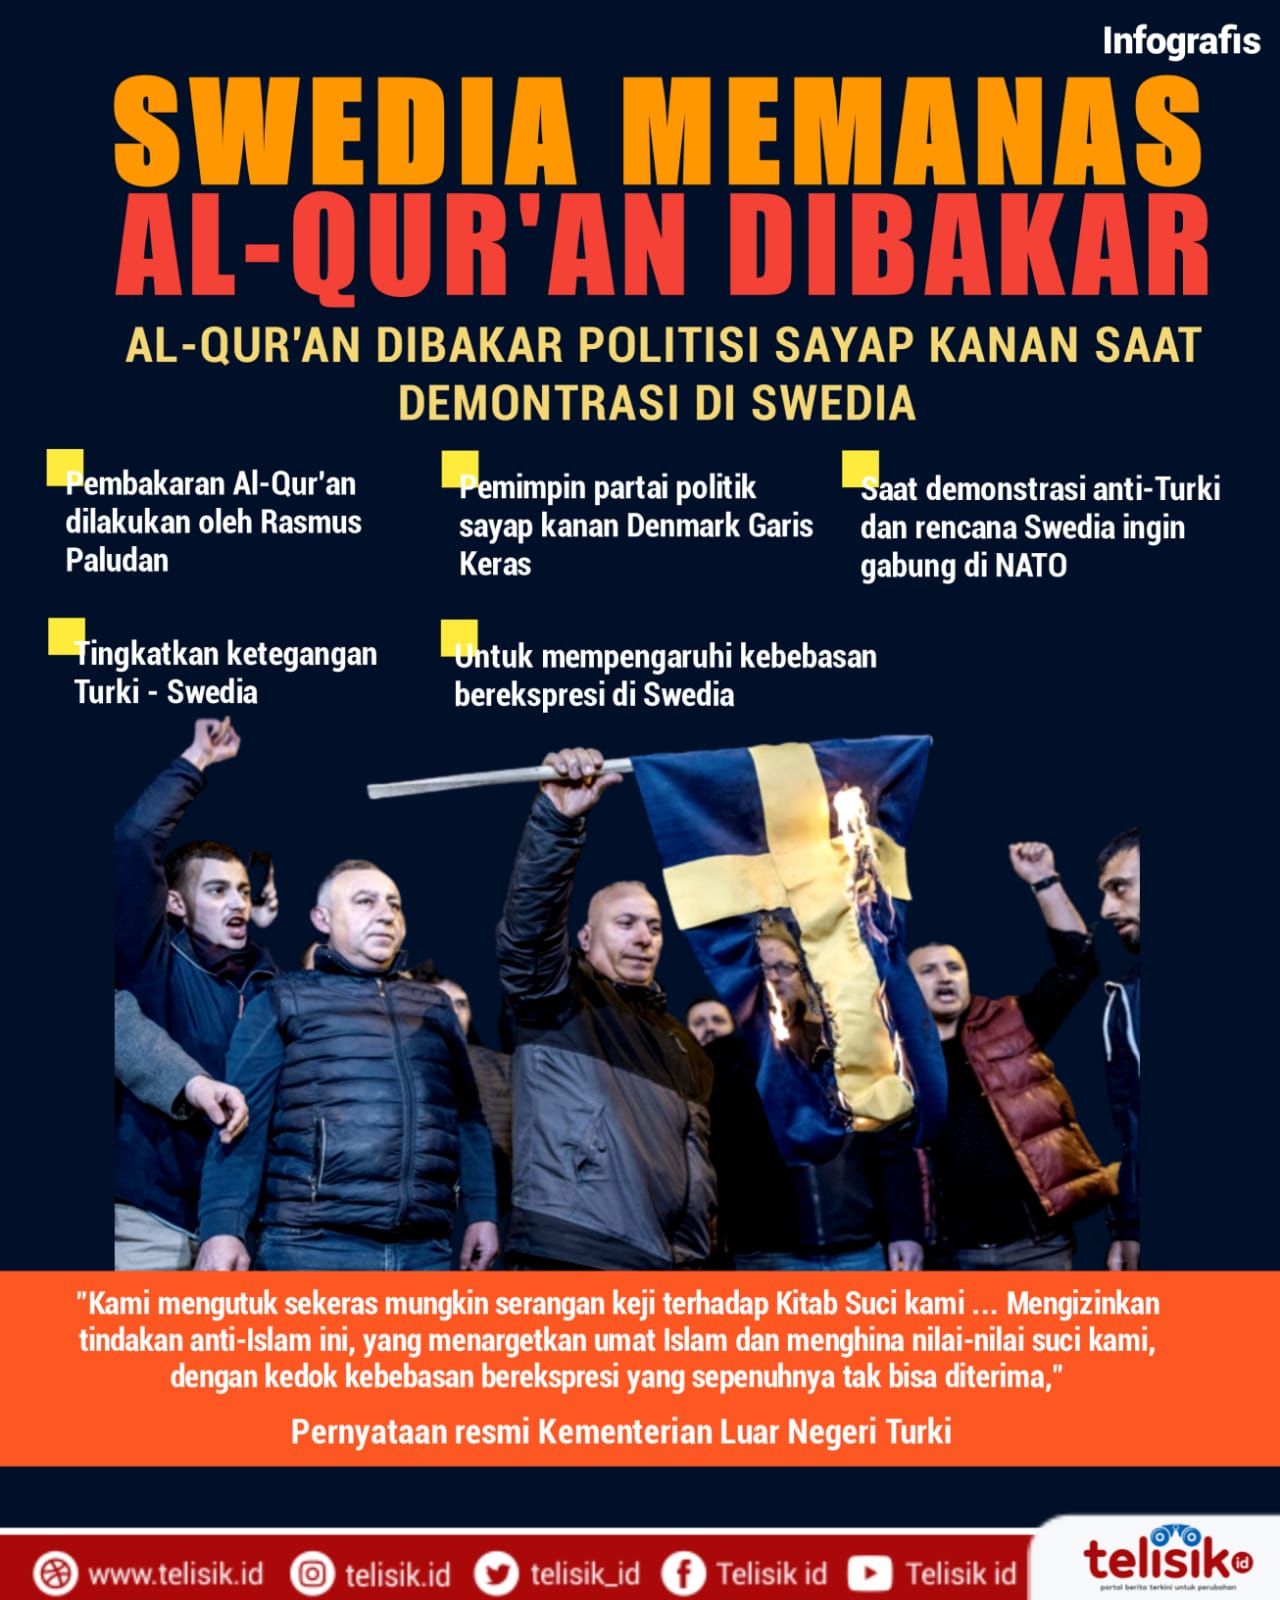 Infografis: Al-Qur'an Dibakar saat Demonstrasi di Swedia 